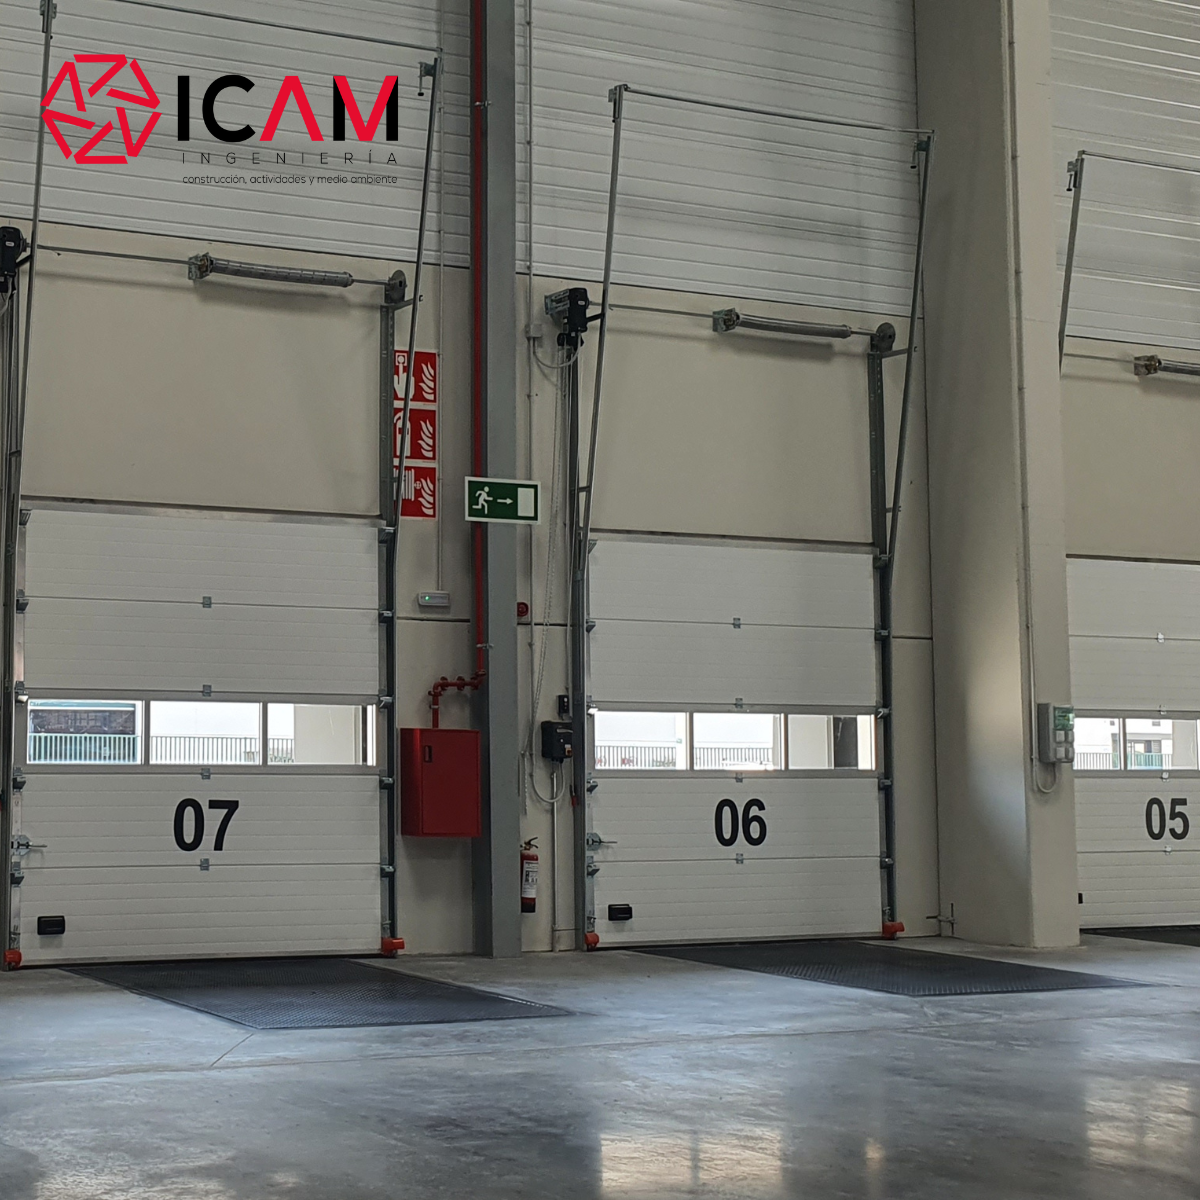 paack abre su nuevo centro logístico en valencia en el poligono industrial de Riba roja gracias a Icam sl